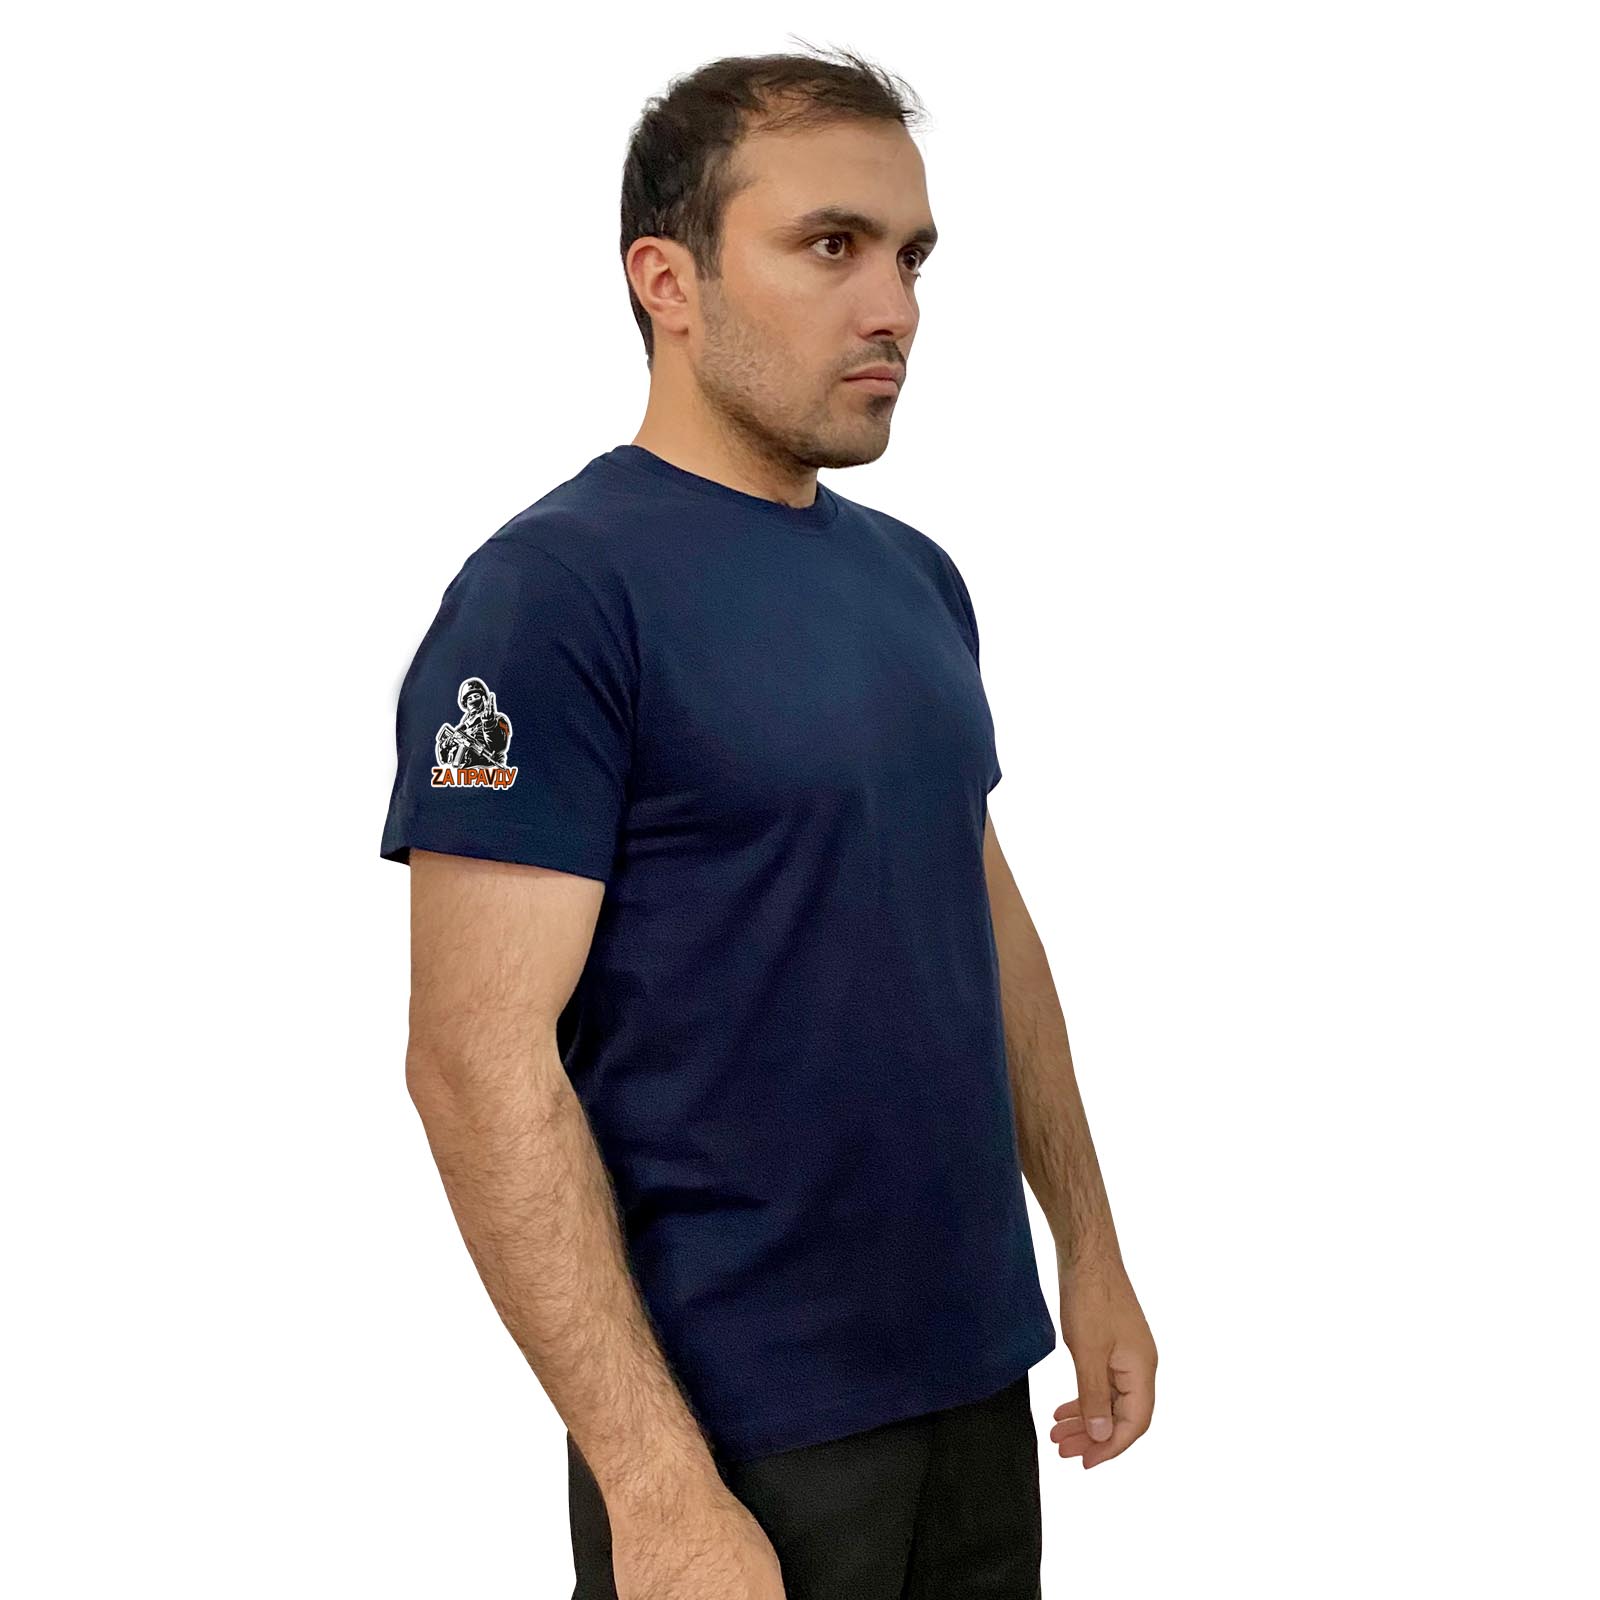 Тёмно-синяя футболка с термоаппликацией "Zа праVду" на рукаве